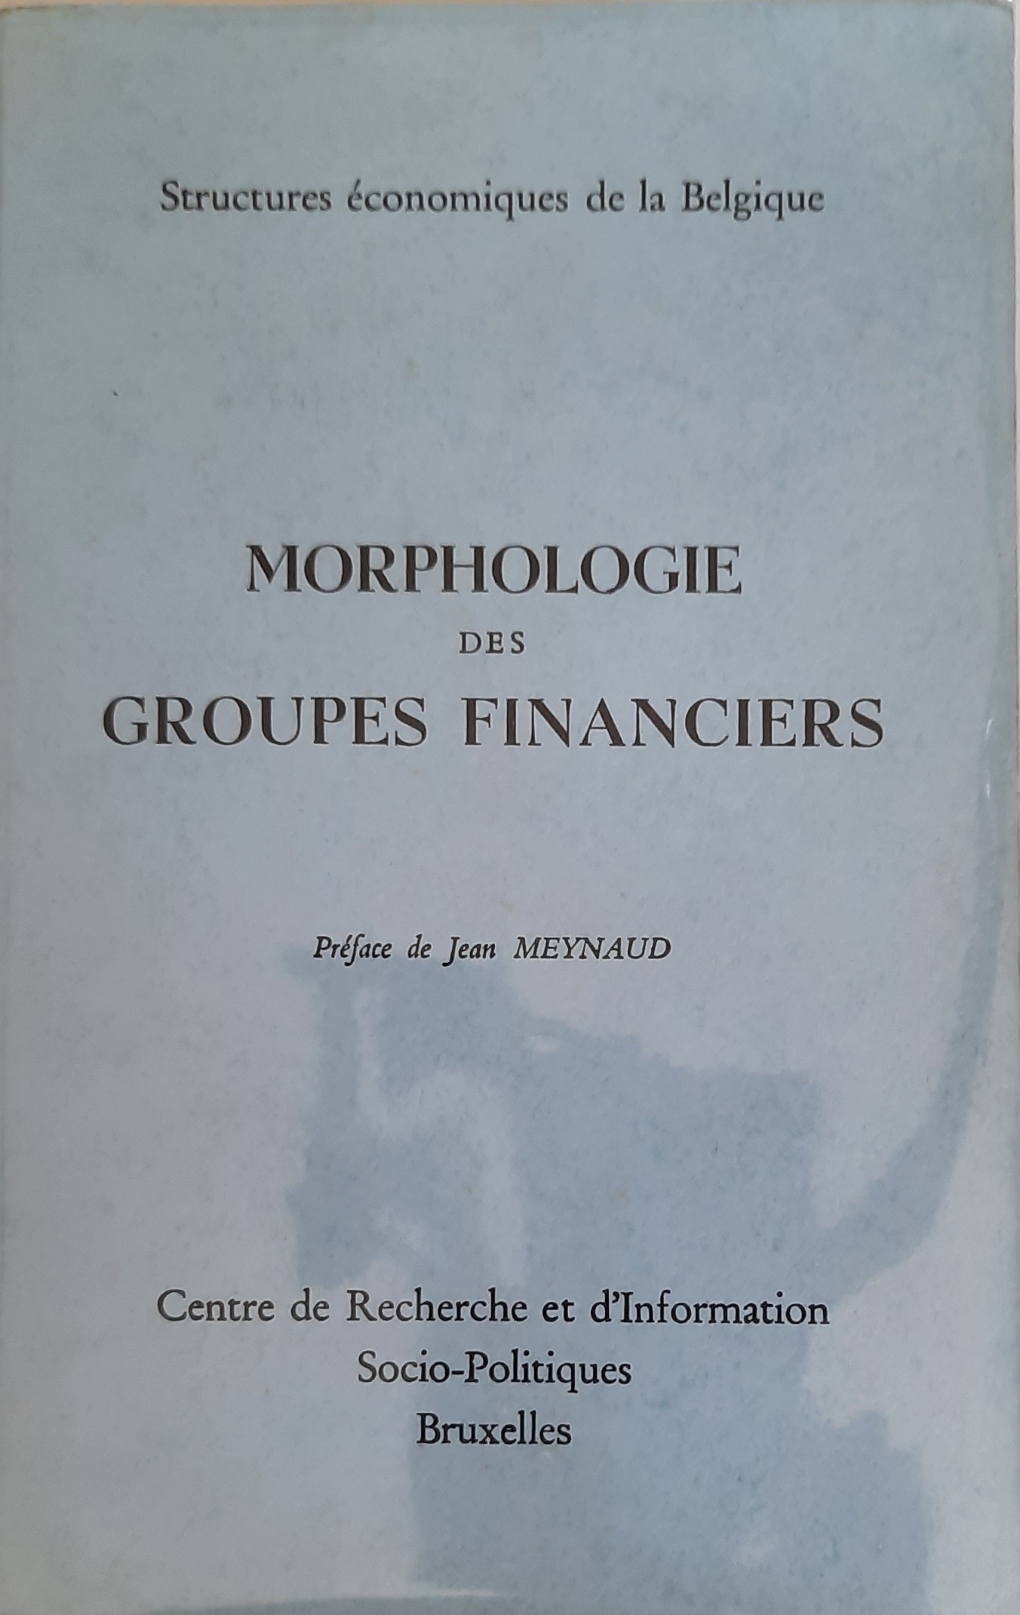 Book cover 202107231111: CRISP, DE WASSEIGE Yves (supervision), MEYNAUD Jean (préface) | Morphologie des groupes financiers. Structures économiques de la Belgique.